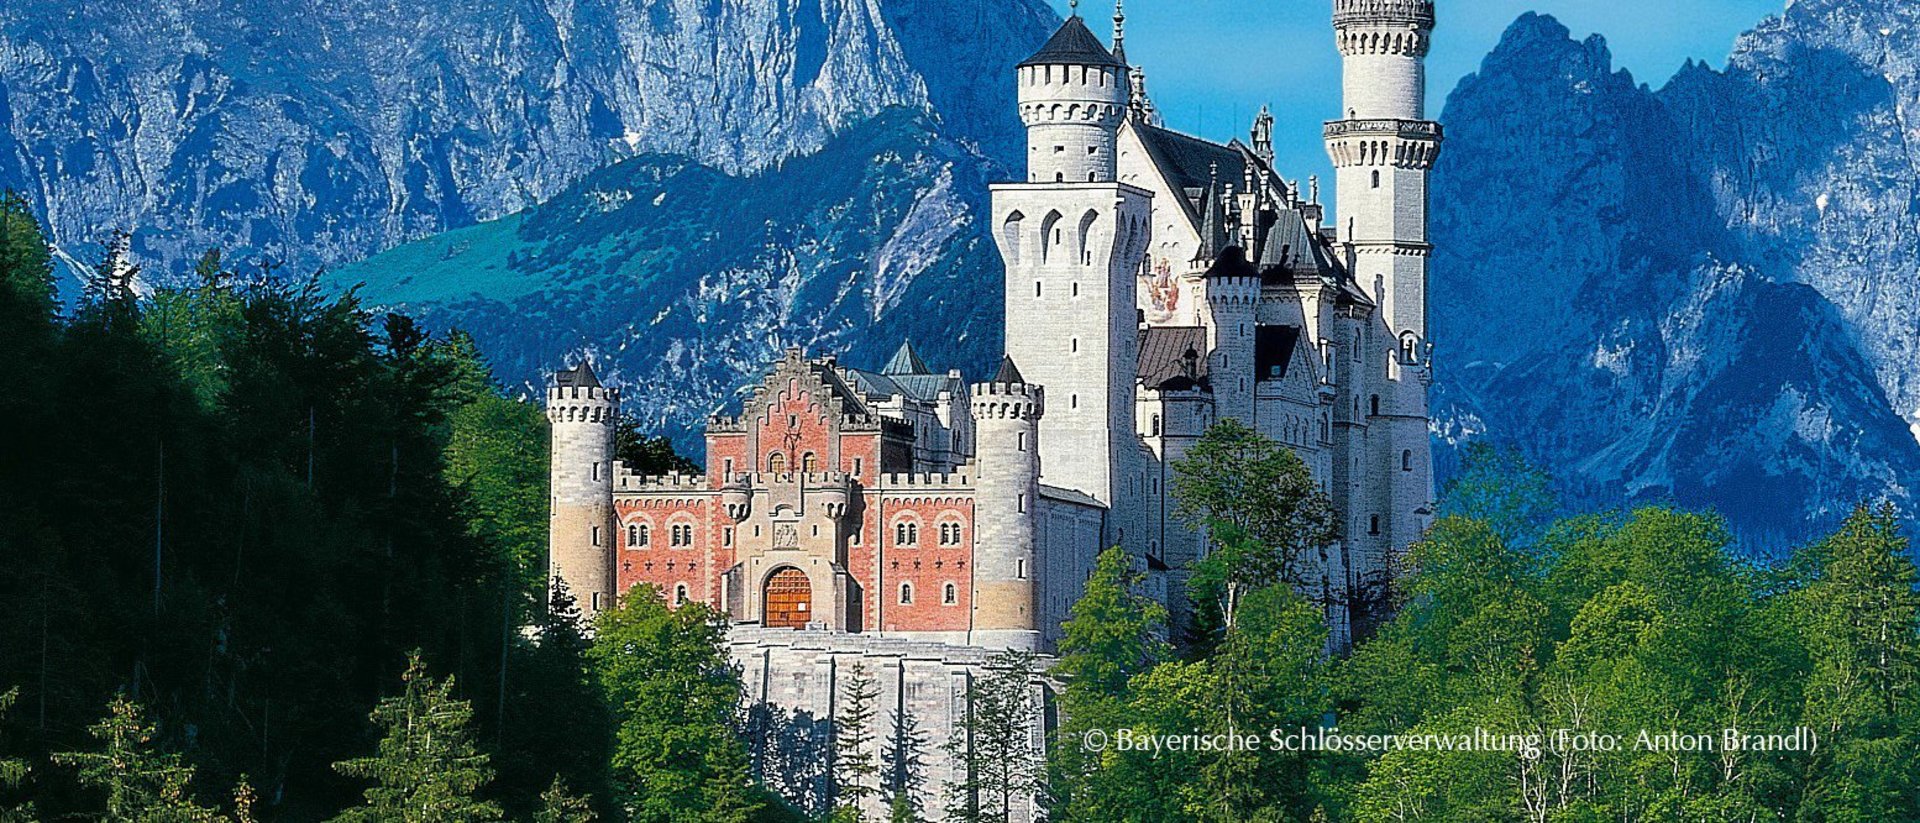 Excursions: Neuschwanstein Castle, Alpsee Mountain World, Skywalk